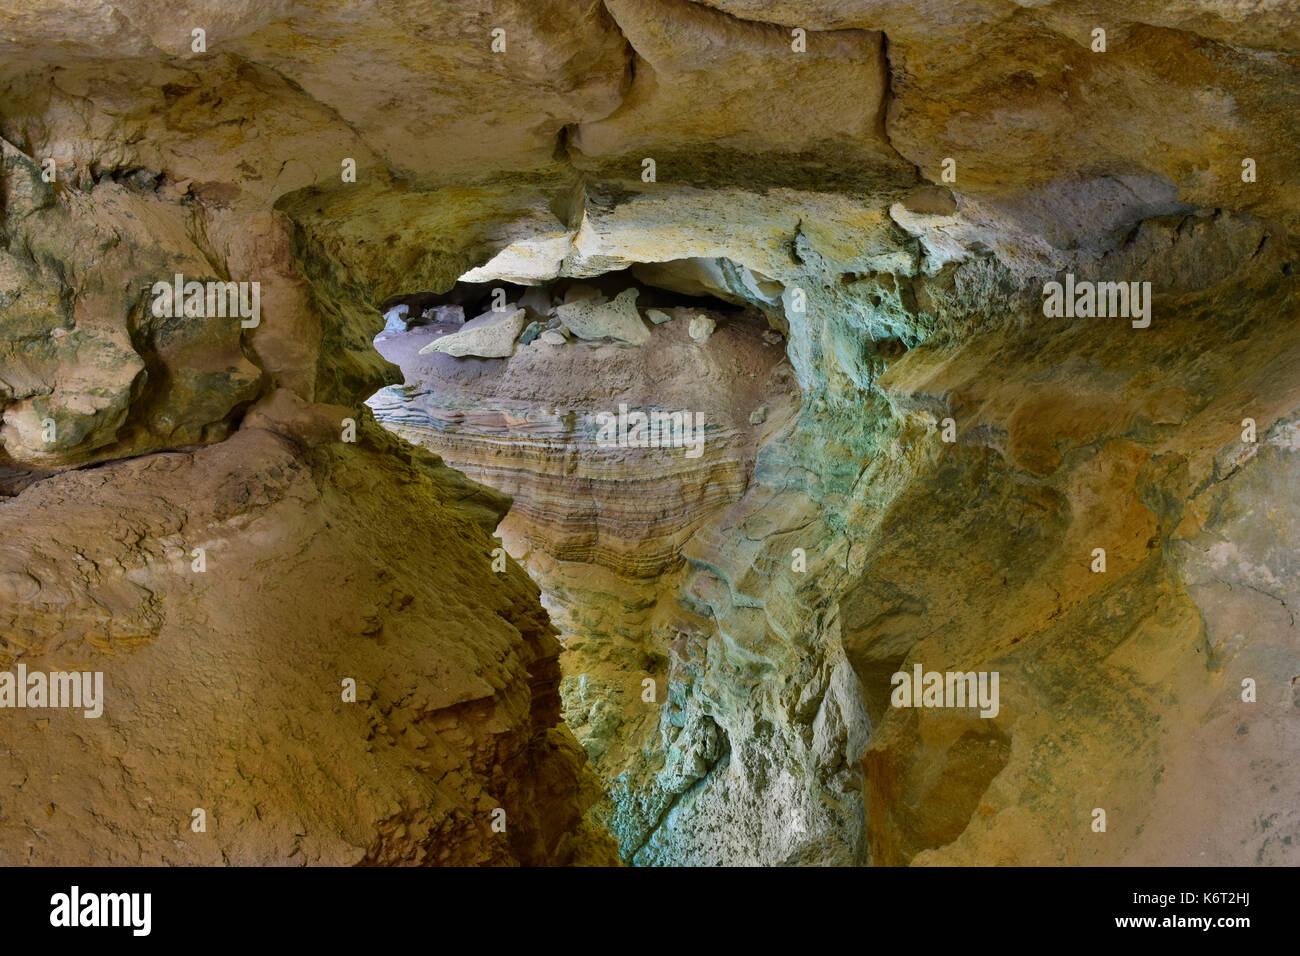 Côté Falaise, grotte, formées par l'érosion de la mer, contiennent des preuves de sédimentation avec différentes couches de sédiments ayant différentes couleurs. Cliffs à Malte Banque D'Images